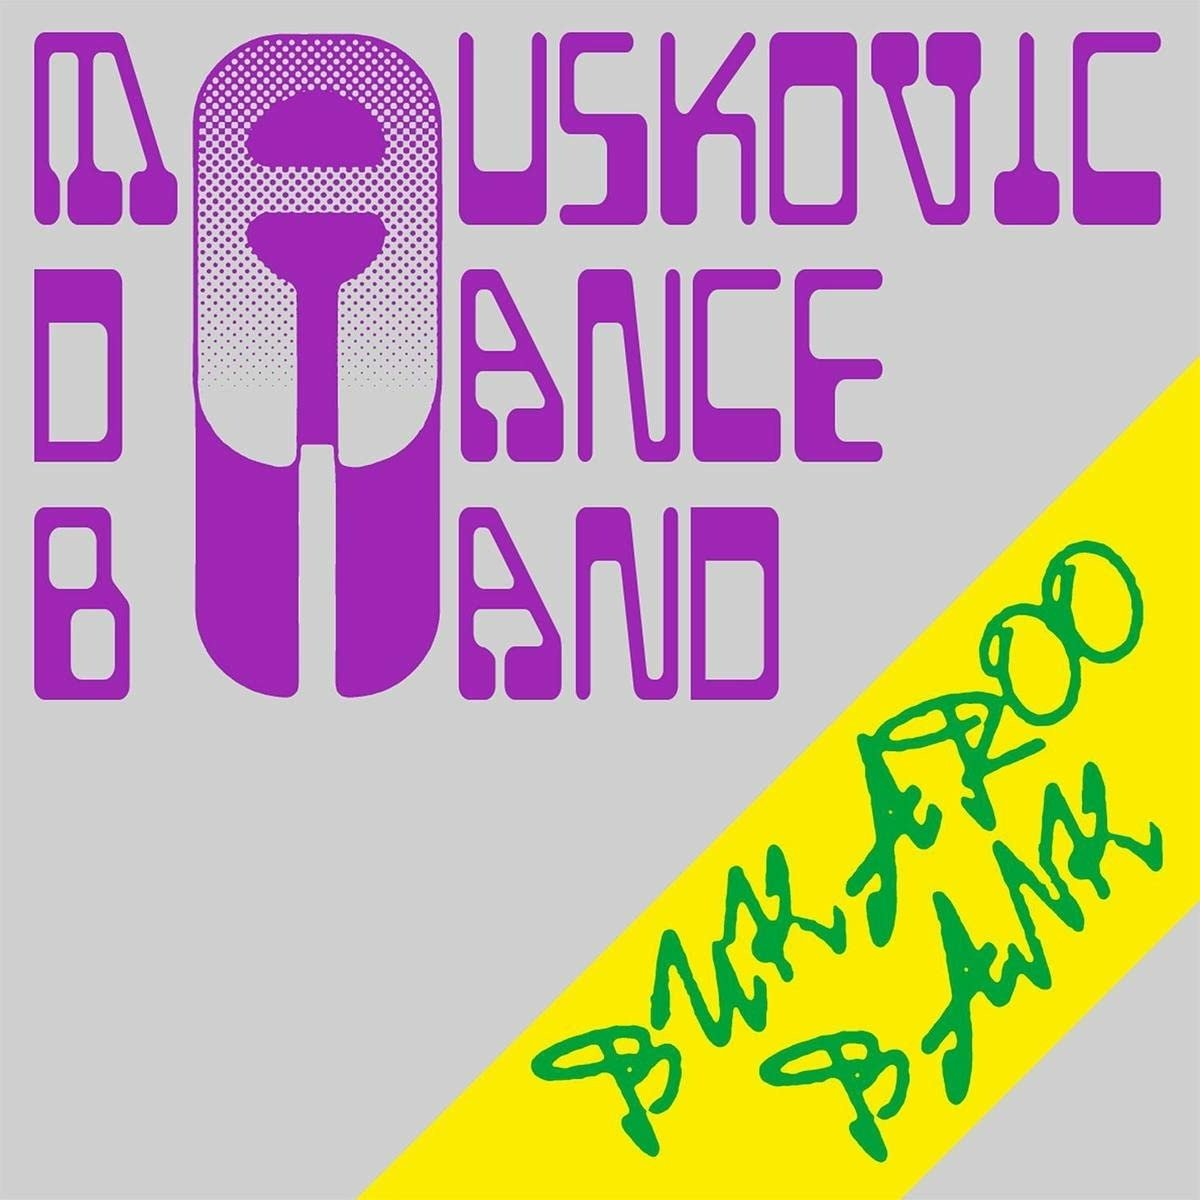 CD Shop - MAUSKOVIC DANCE BAND BUKAROO BANK